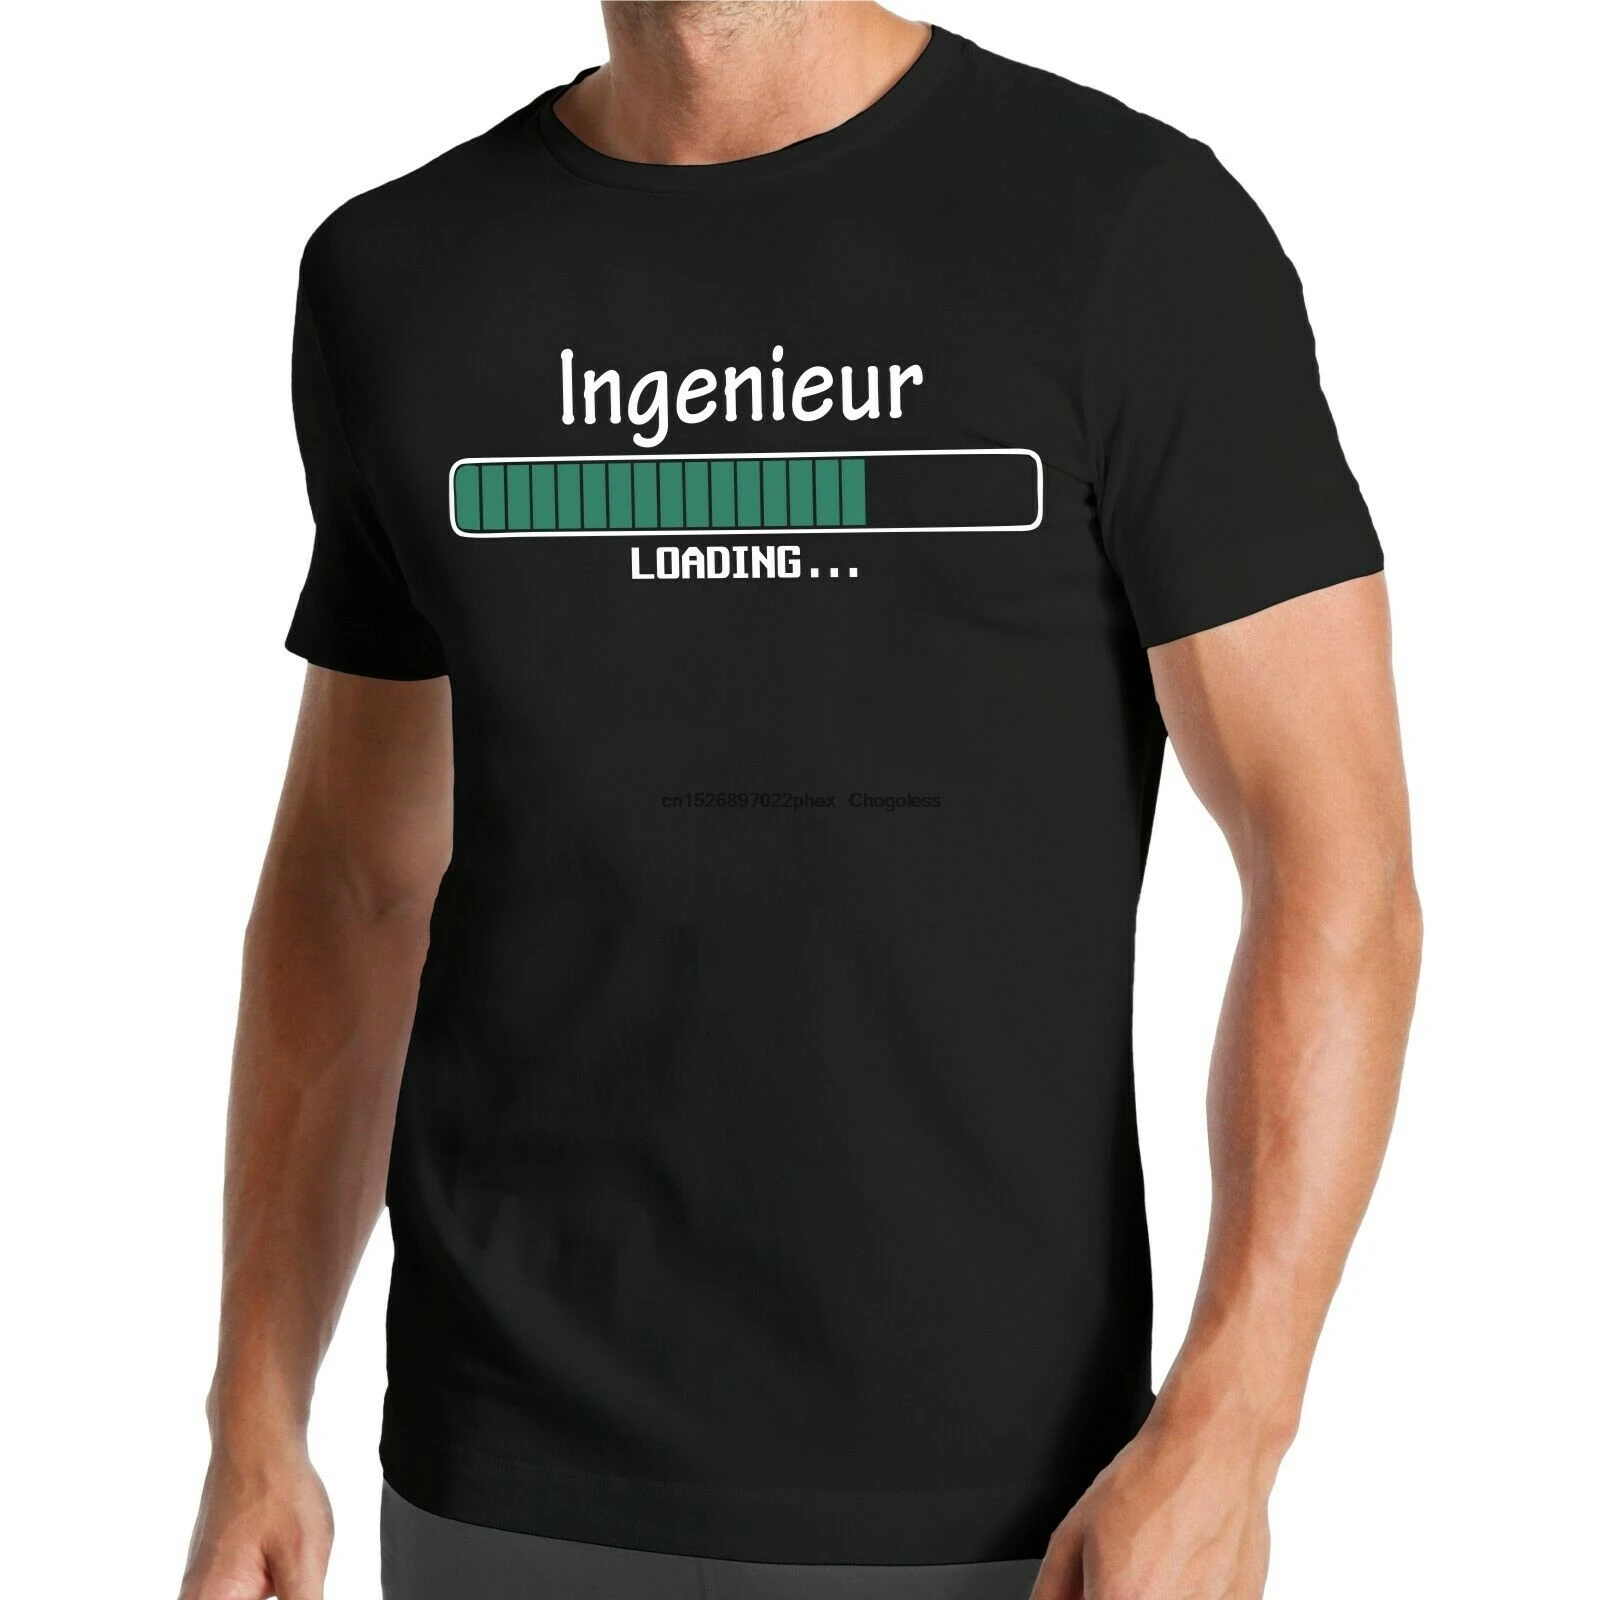 

Загрузка инженерной футболки производство механика Инженерная техника